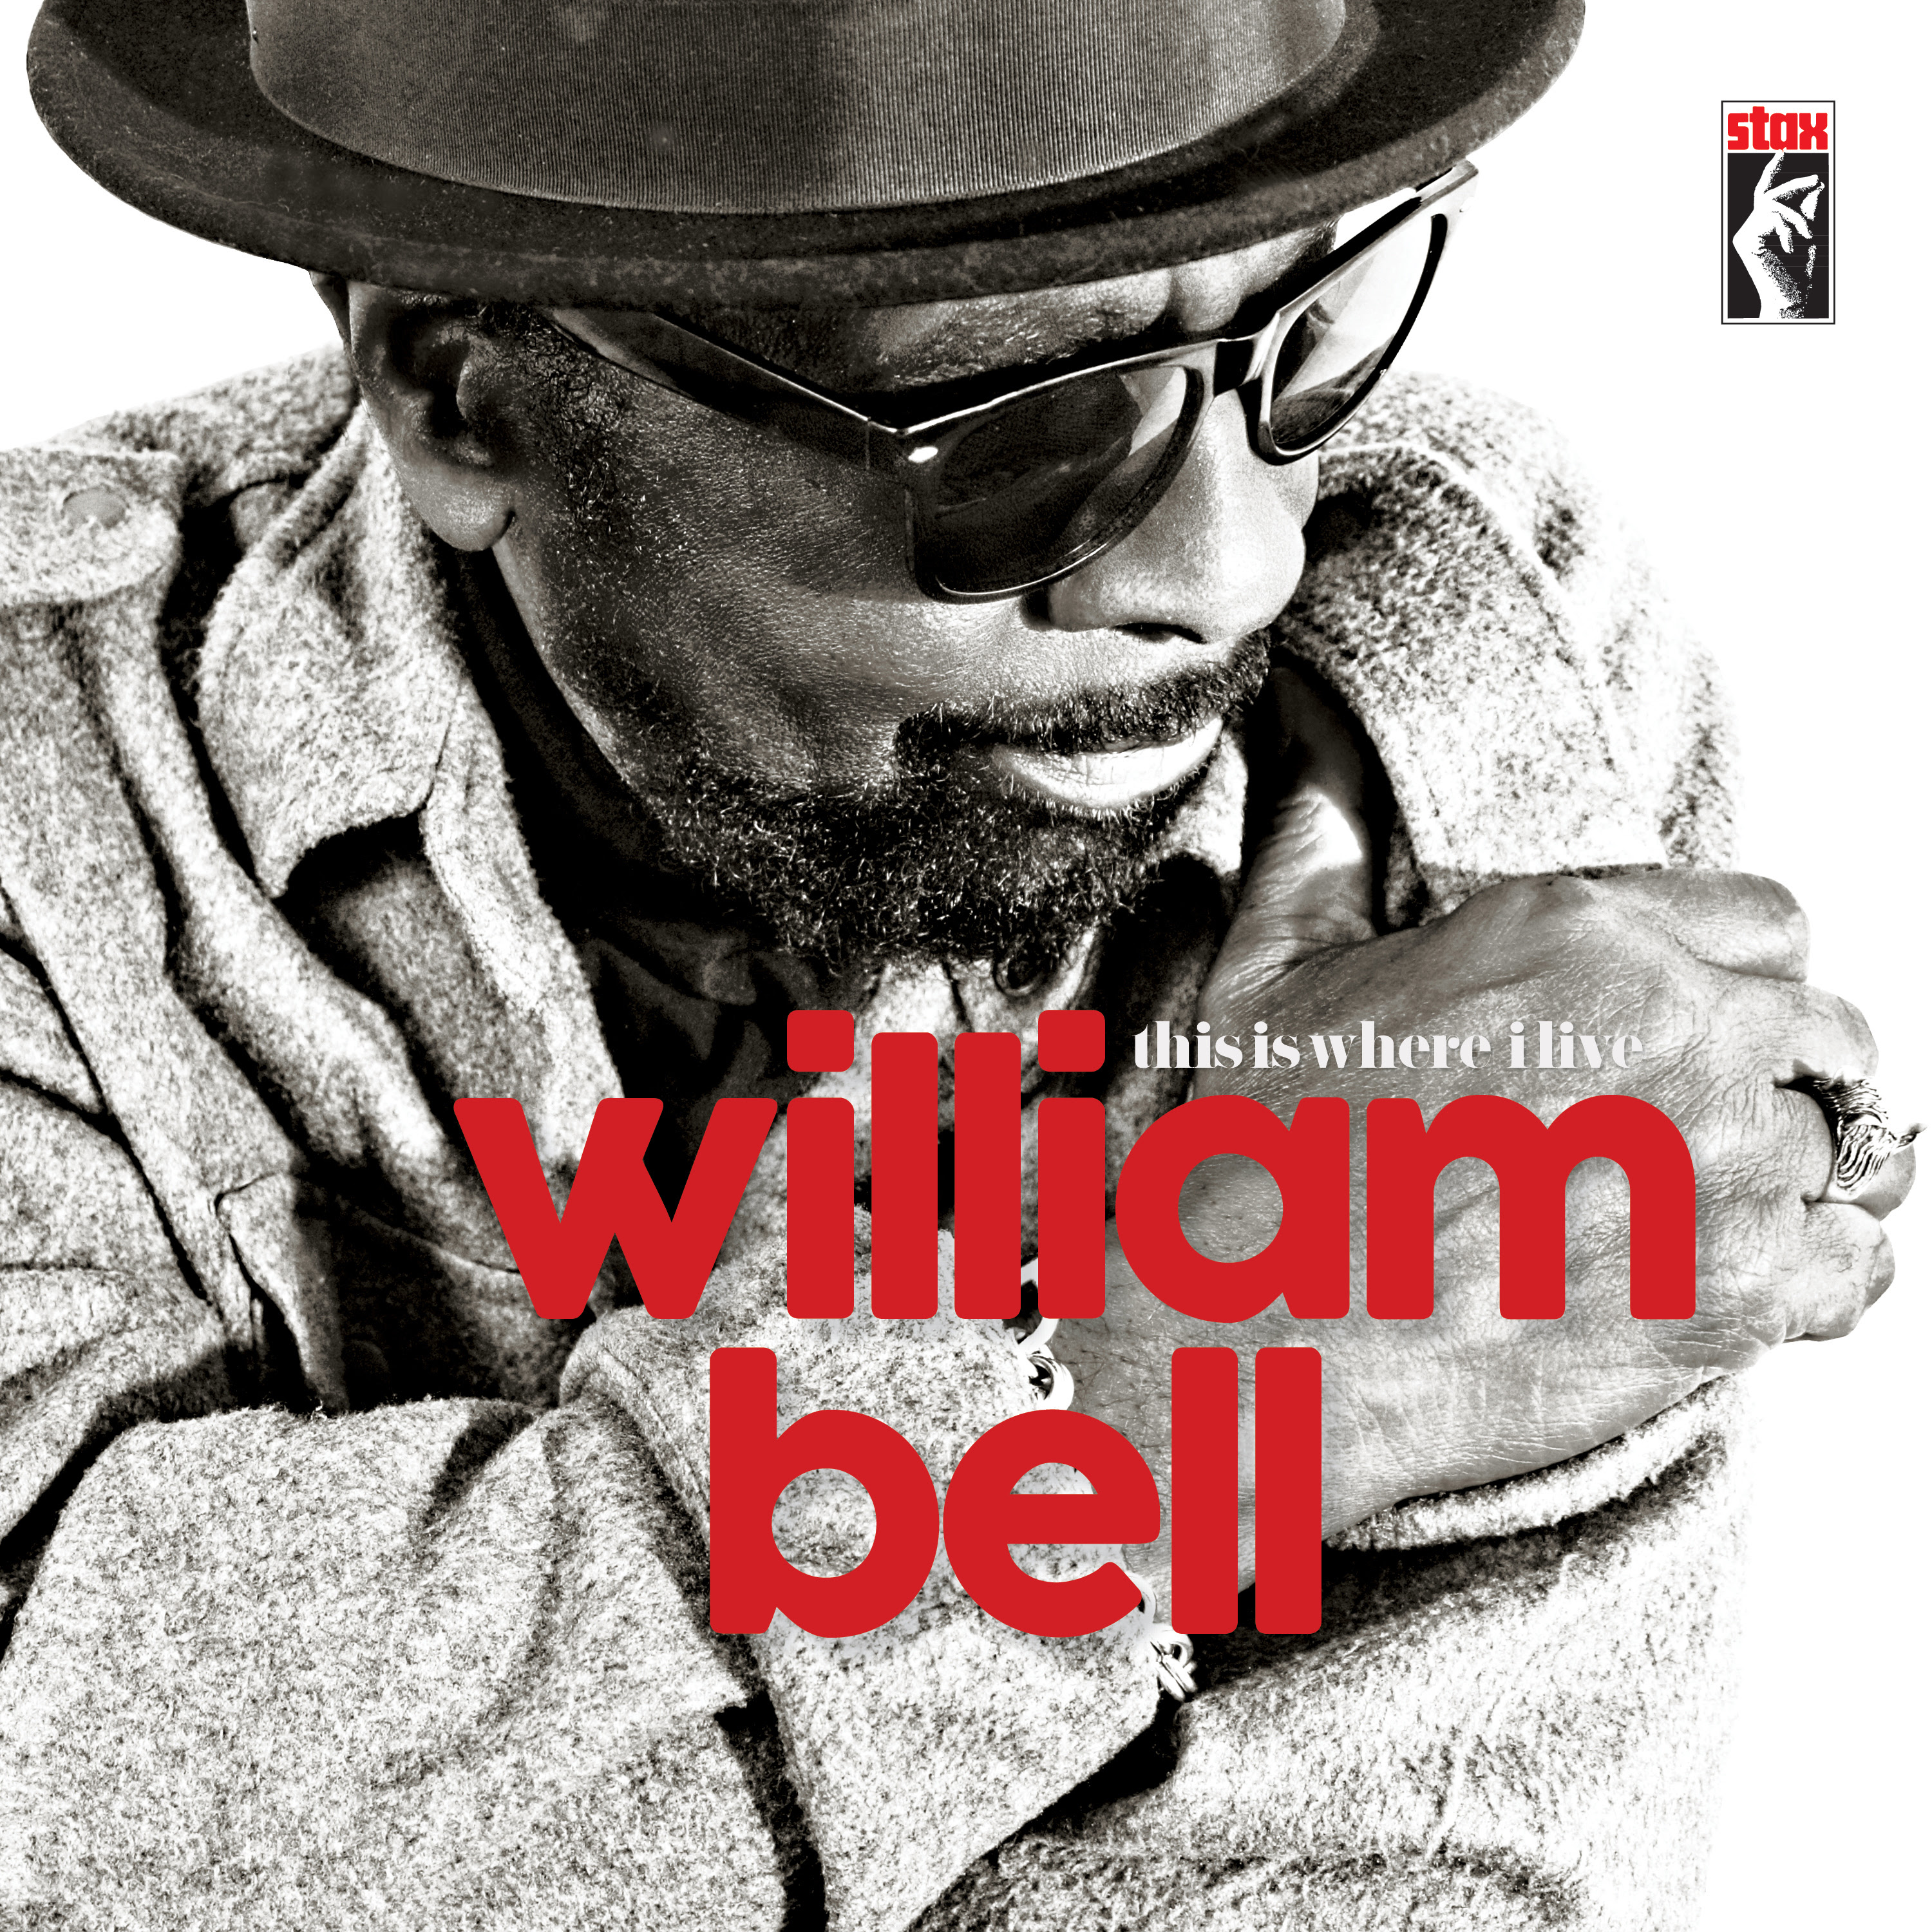 Memphis Soul Legend William Bell Discusses New Album on Tavis Smiley